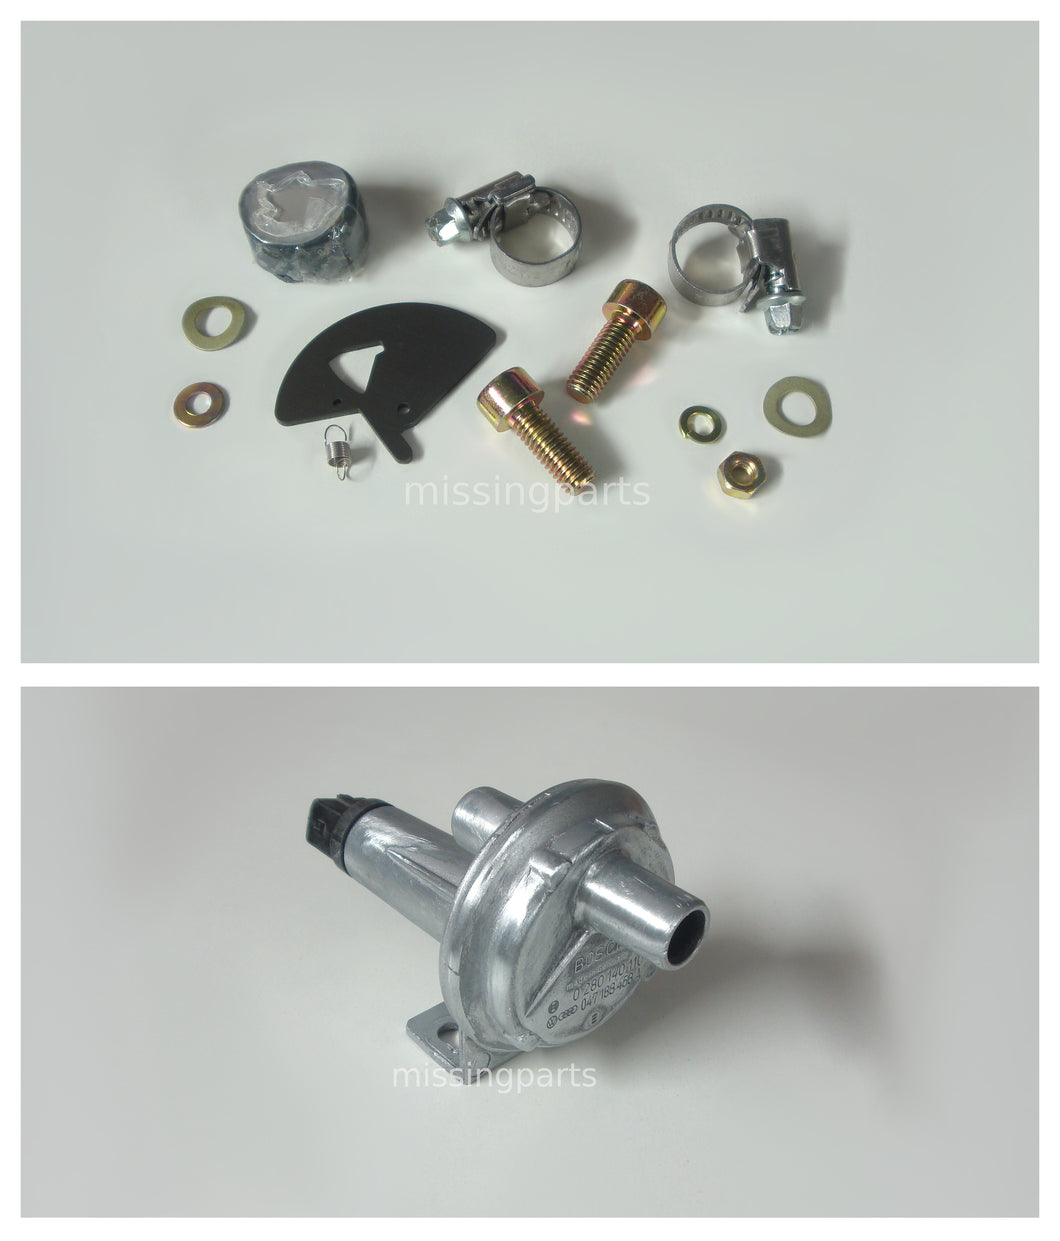 Reparatur Set für Bosch Zusatzluftschieber (Version 1) / Repair Set for Bosch Auxiliary Air Valve (Version 1)